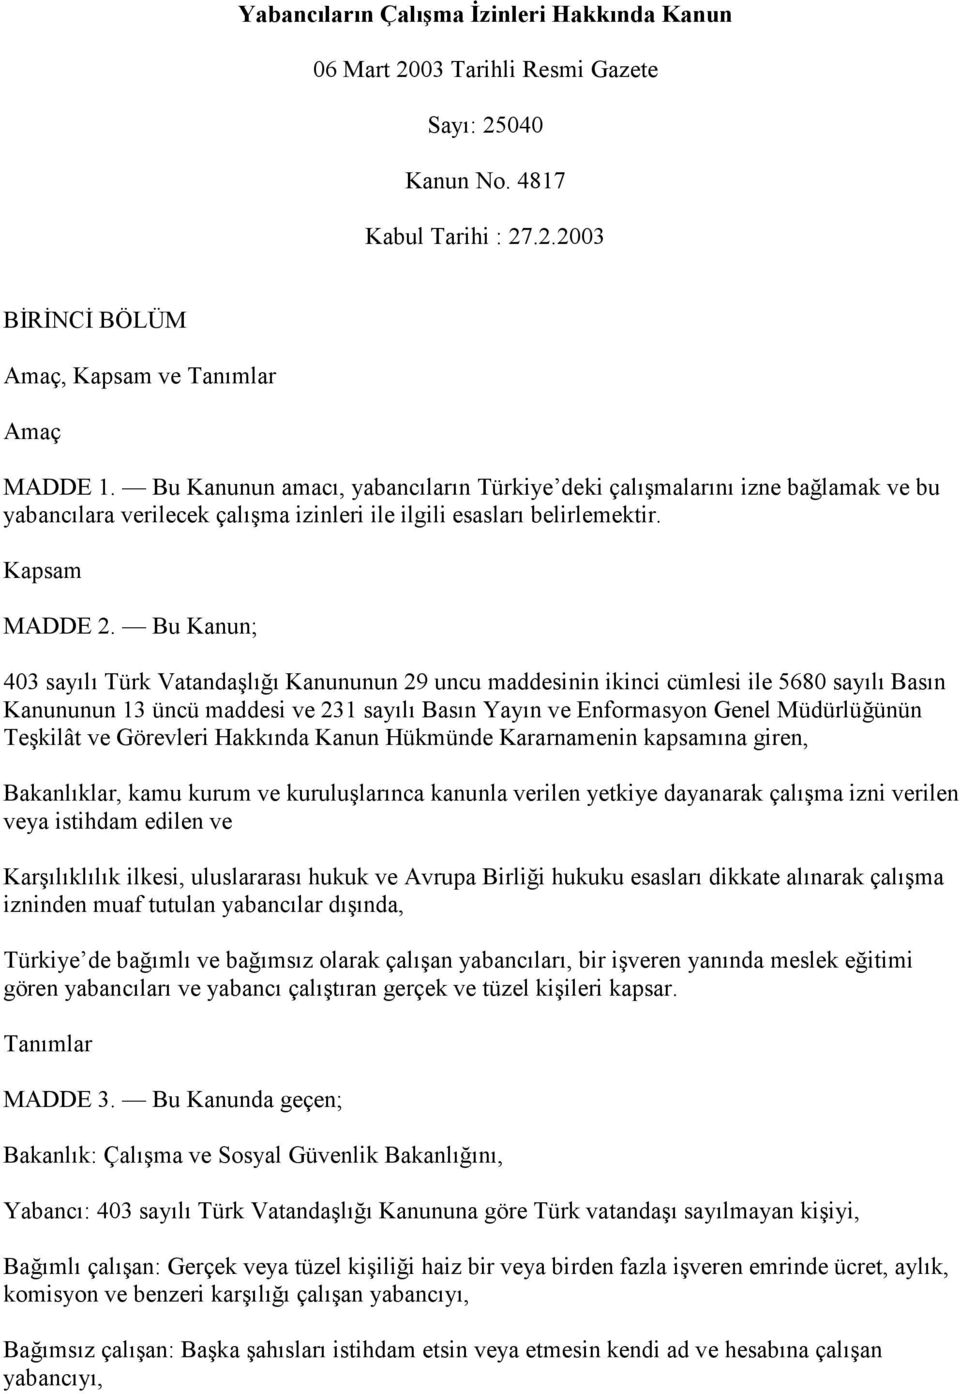 Bu Kanun; 403 sayılı Türk Vatandaşlığı Kanununun 29 uncu maddesinin ikinci cümlesi ile 5680 sayılı Basın Kanununun 13 üncü maddesi ve 231 sayılı Basın Yayın ve Enformasyon Genel Müdürlüğünün Teşkilât